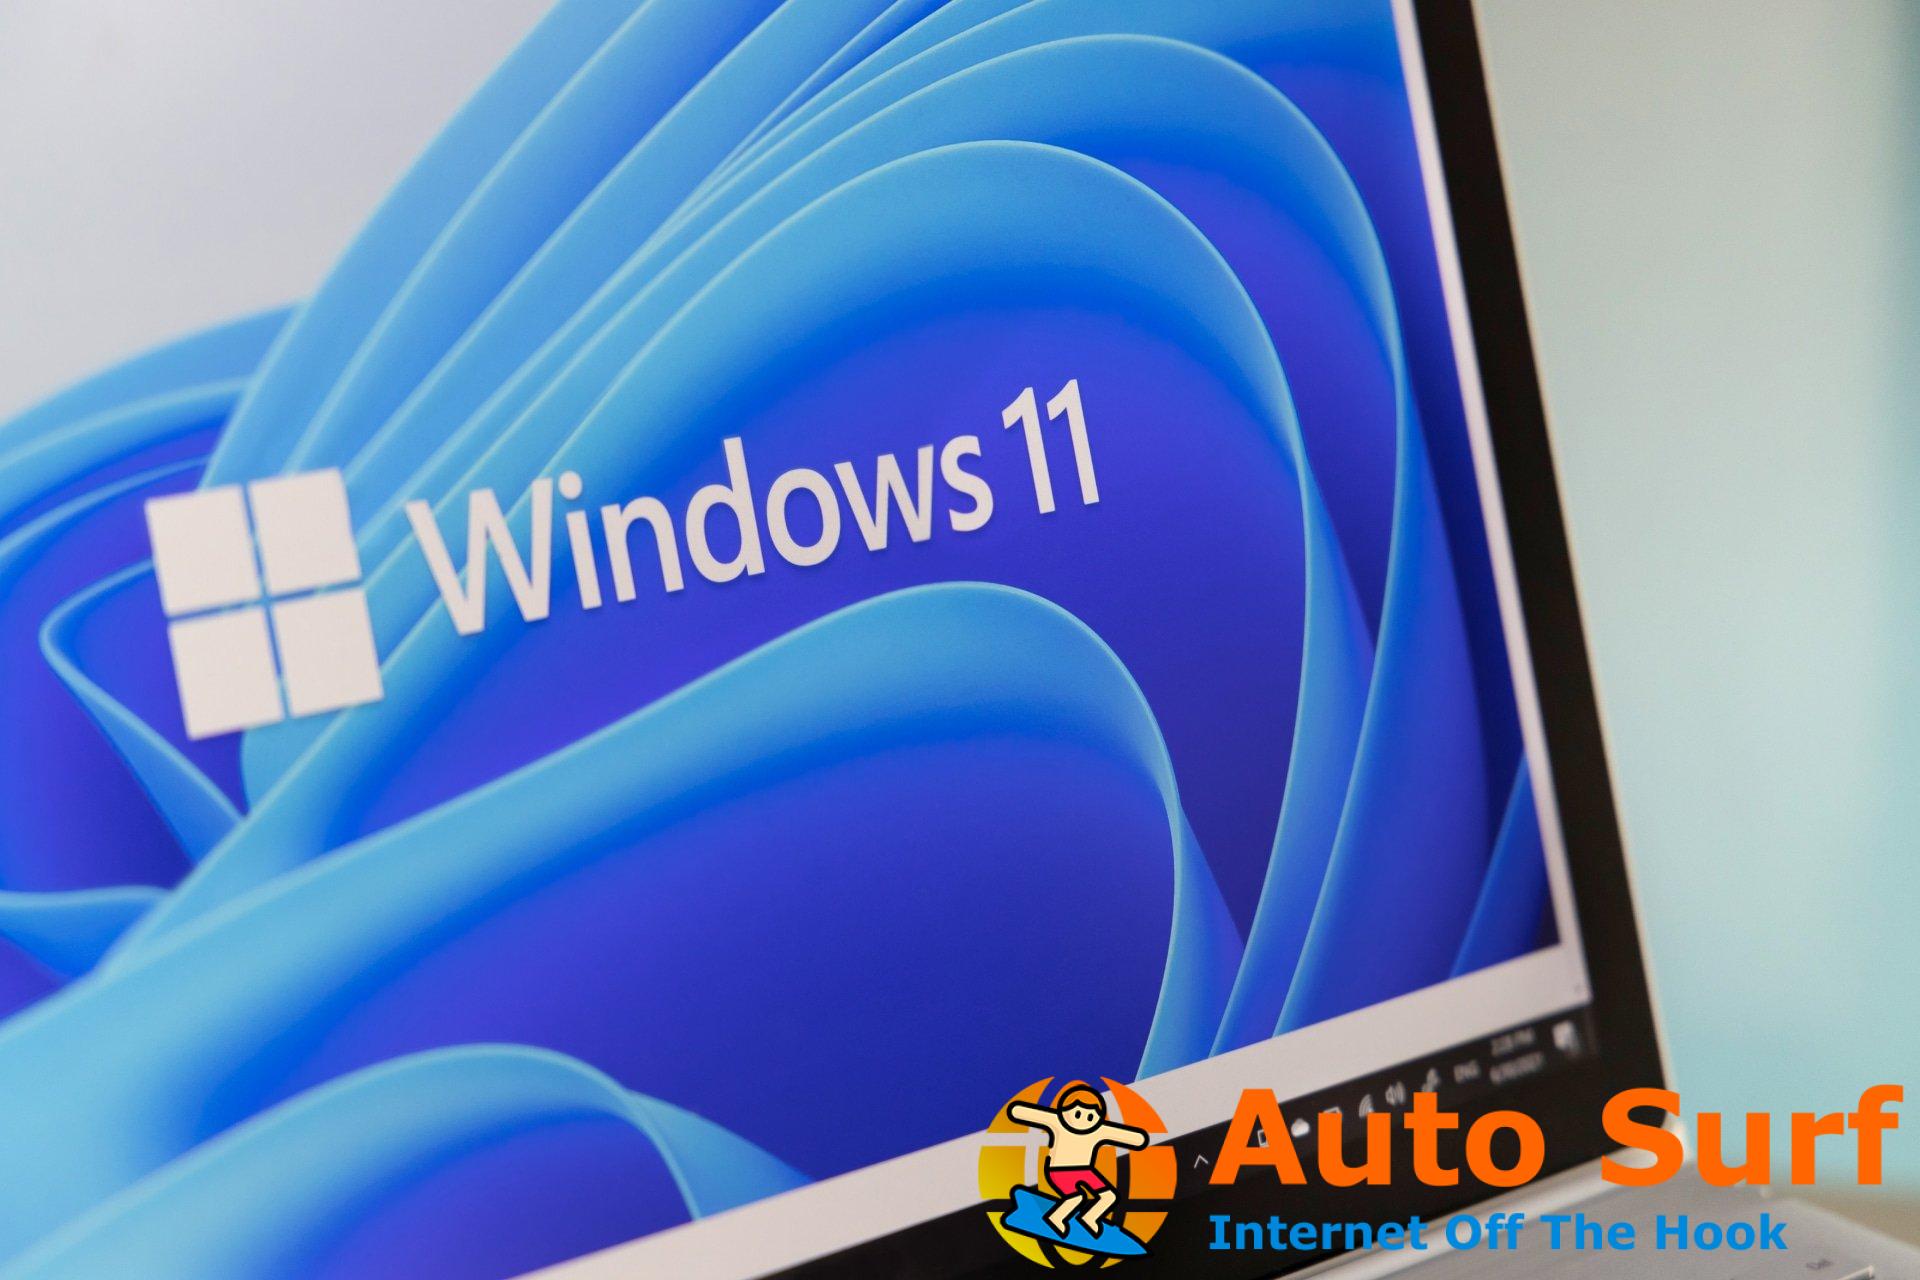 Windows 11 sigue instalando bloatware aleatoriamente sin el consentimiento del usuario